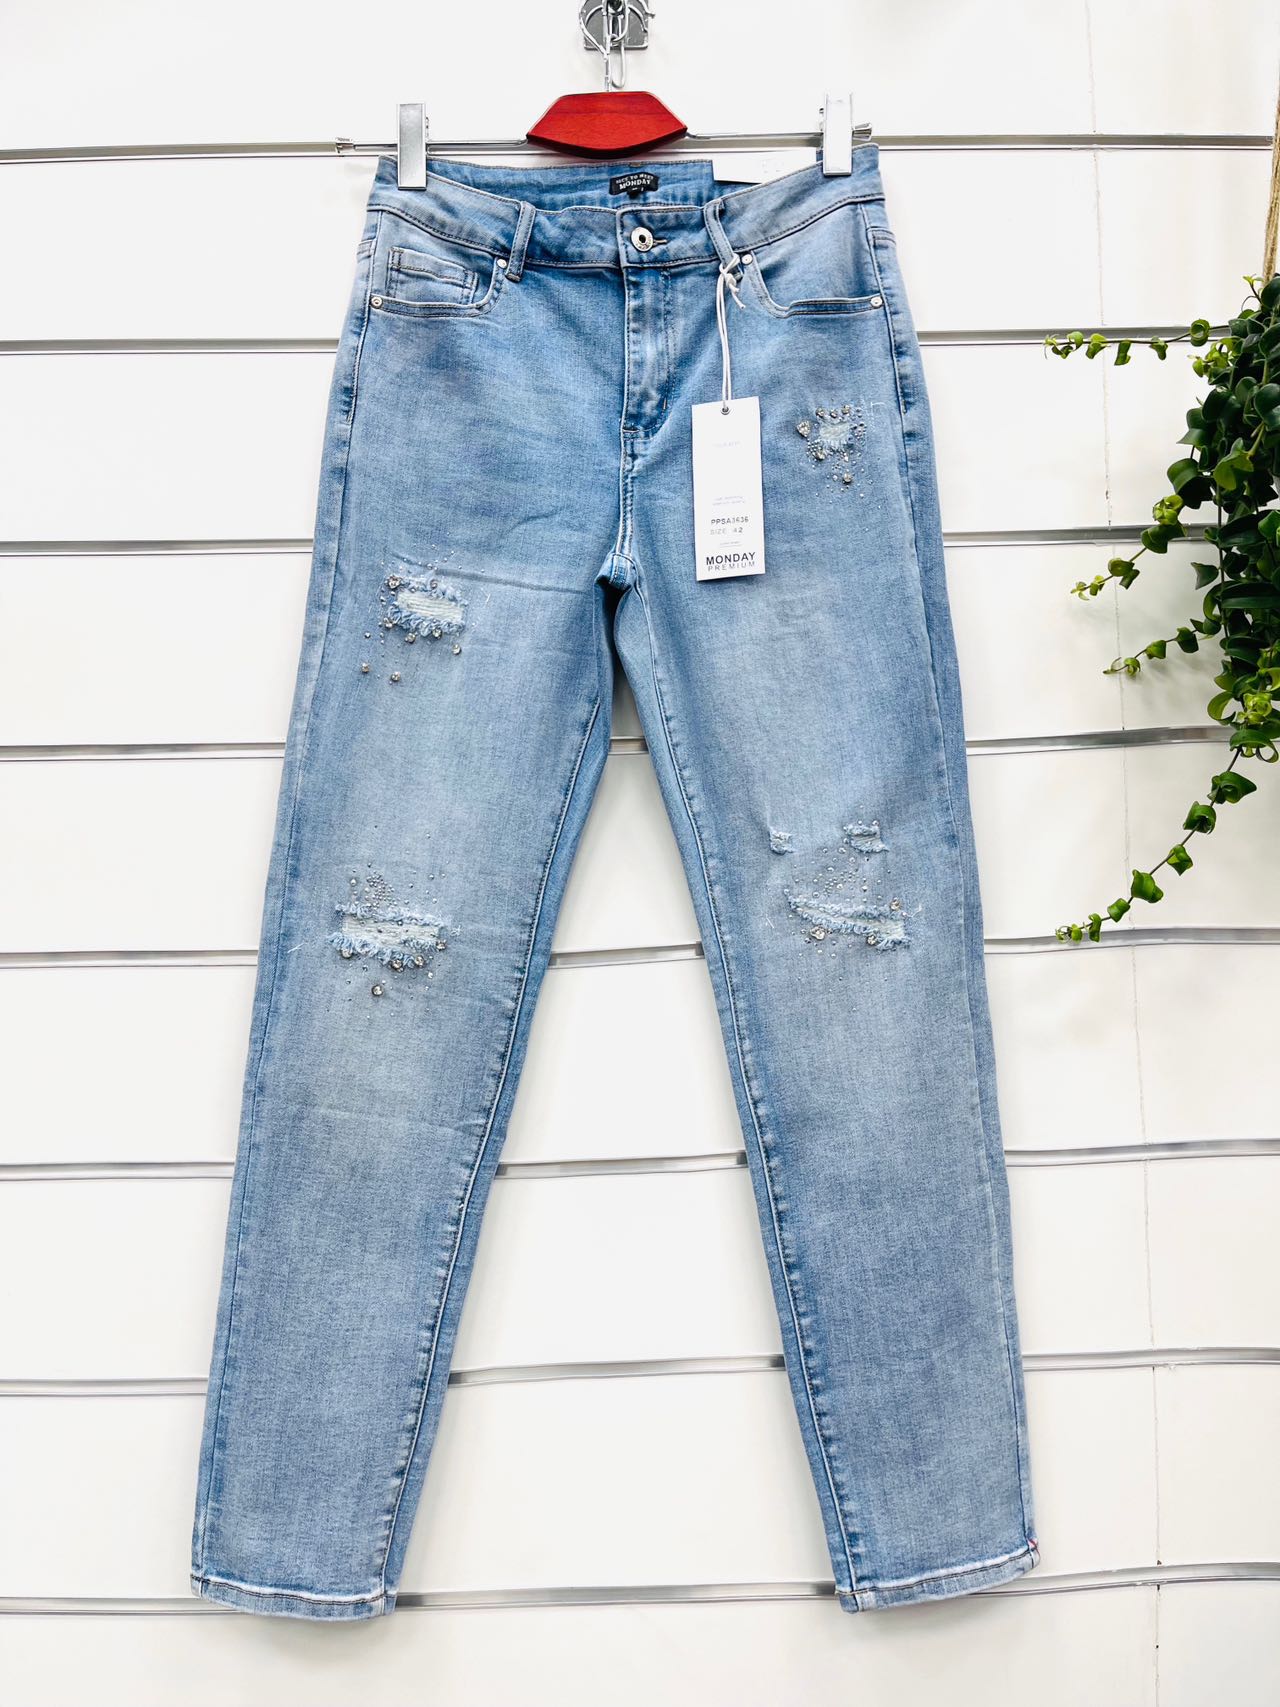 Spodnie damskie jeans Roz XS-XL Paczka 10 szt